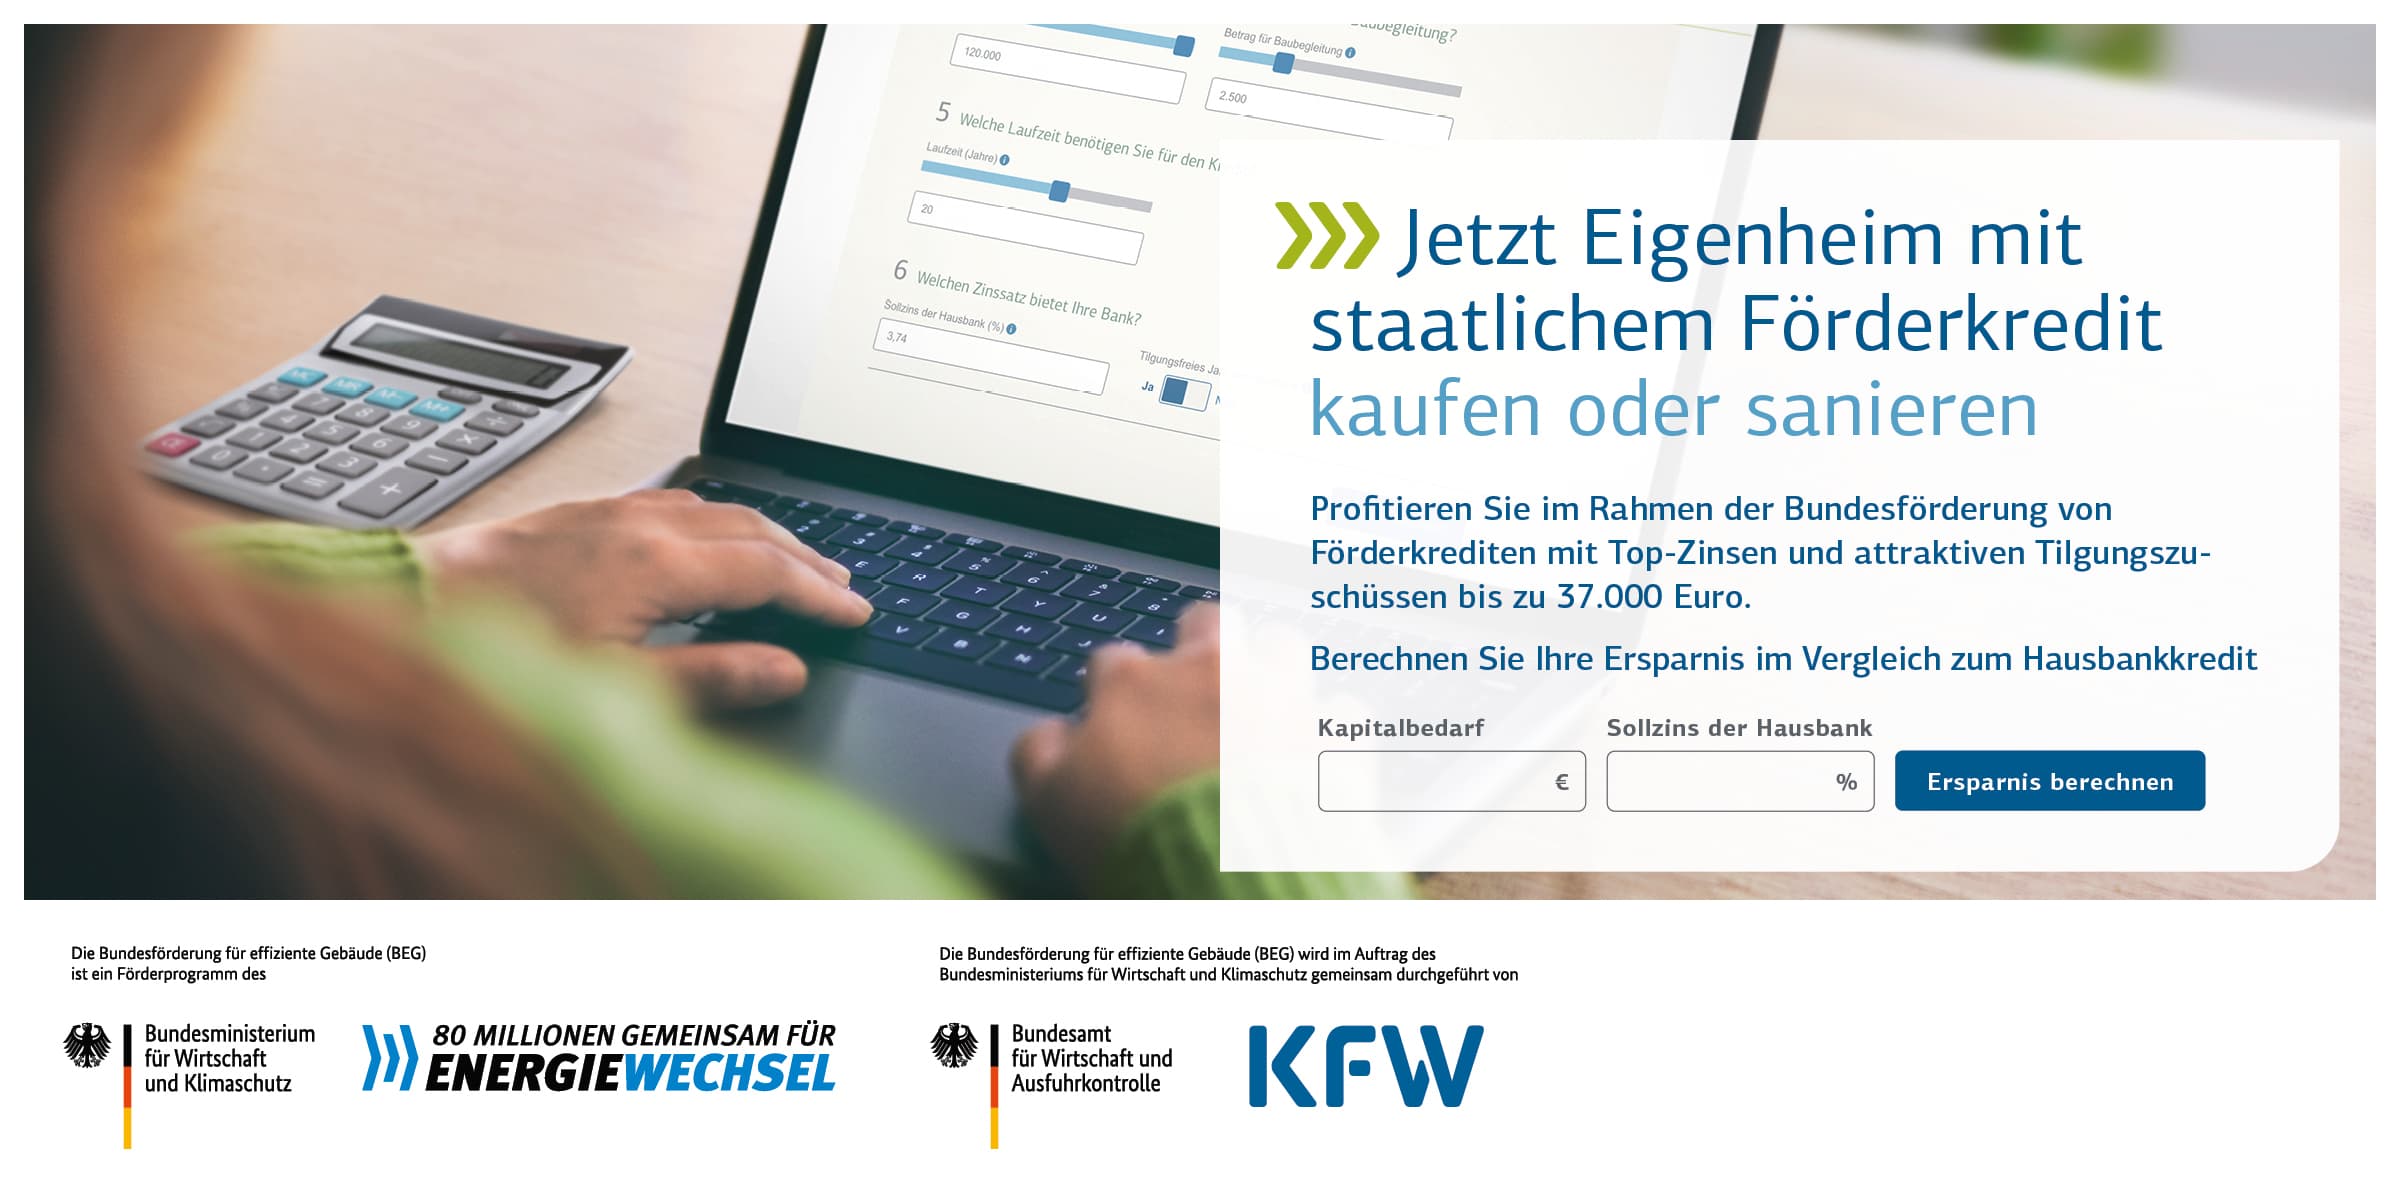 KfW - Bank aus Verantwortung